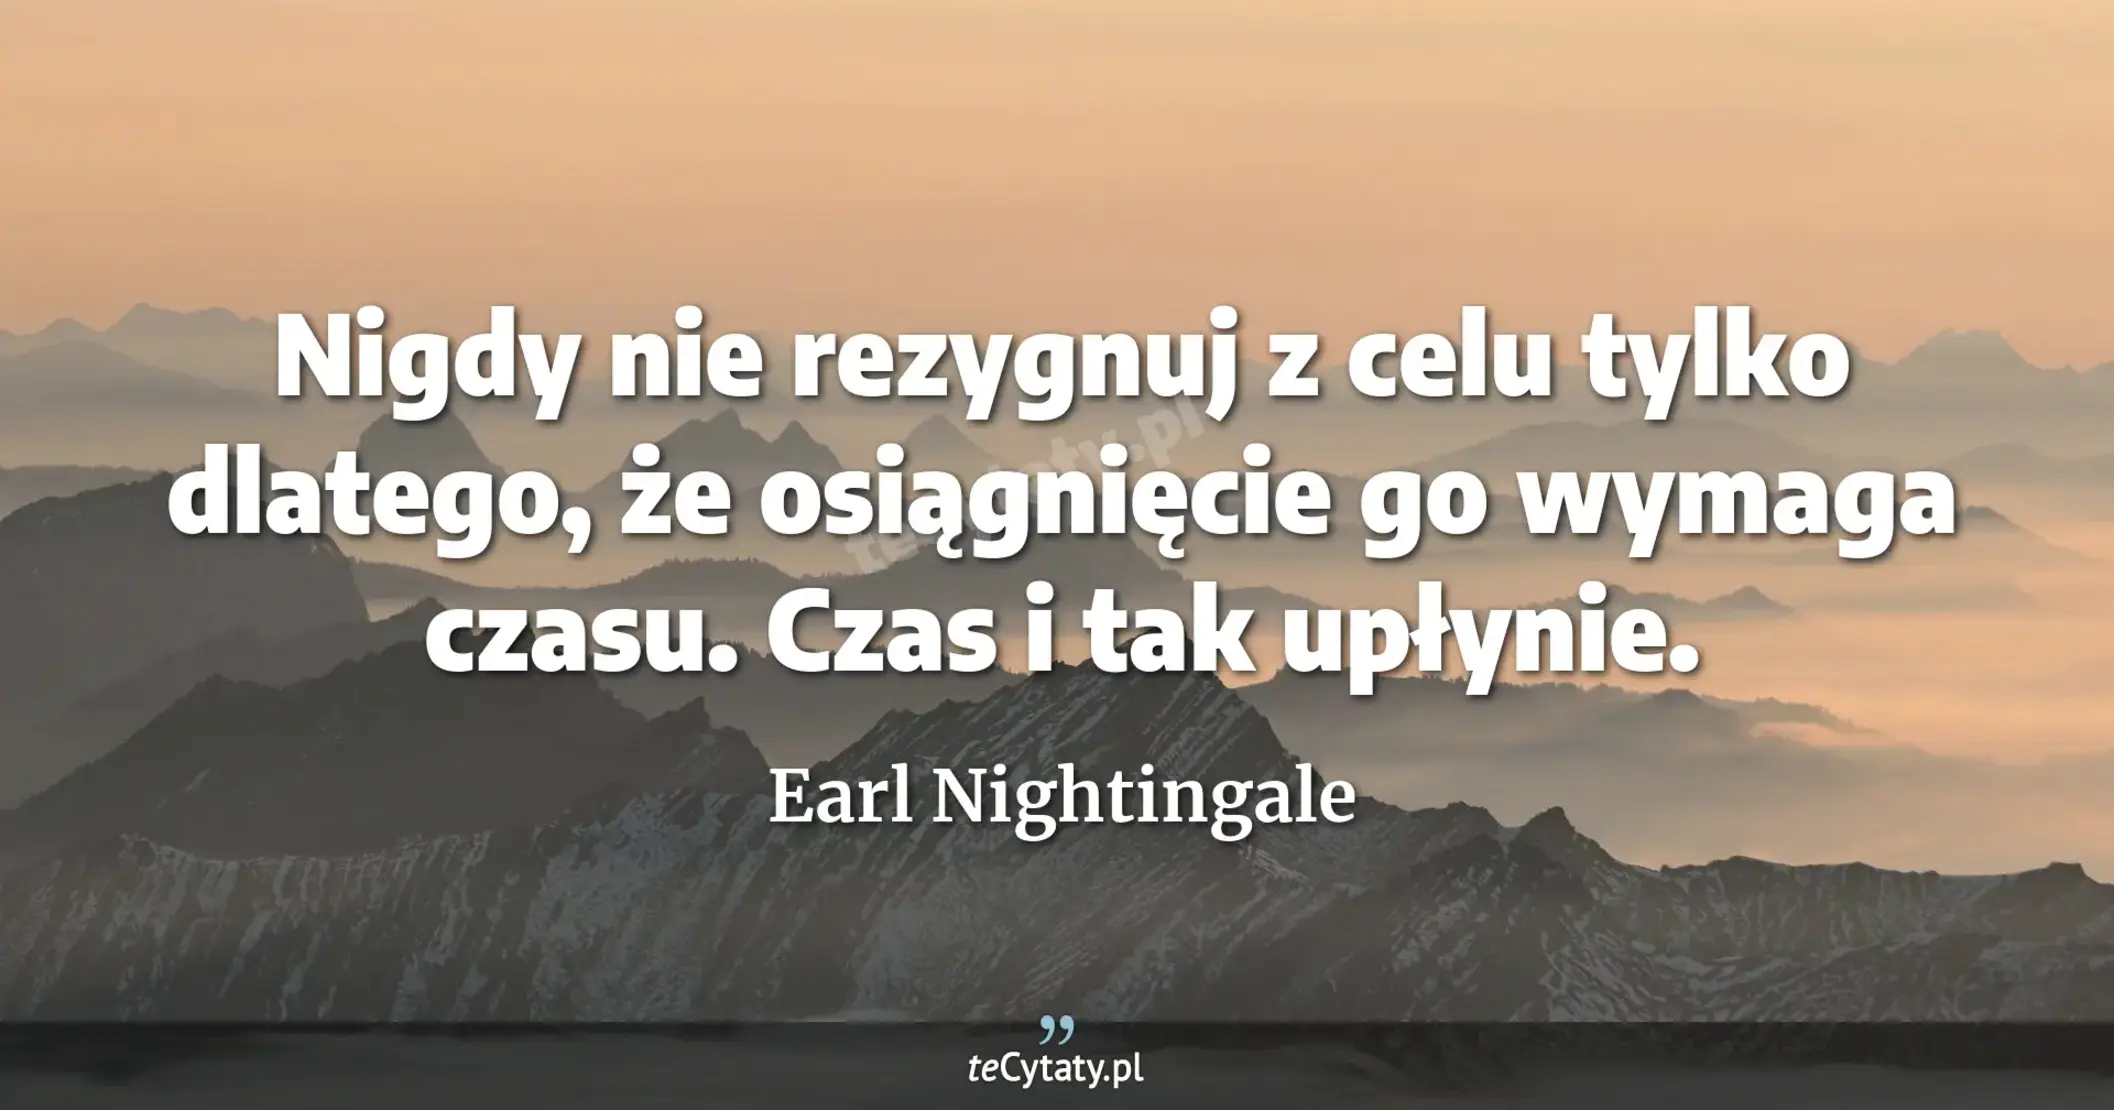 Nigdy nie rezygnuj z celu tylko dlatego, że osiągnięcie go wymaga czasu. Czas i tak upłynie. - Earl Nightingale